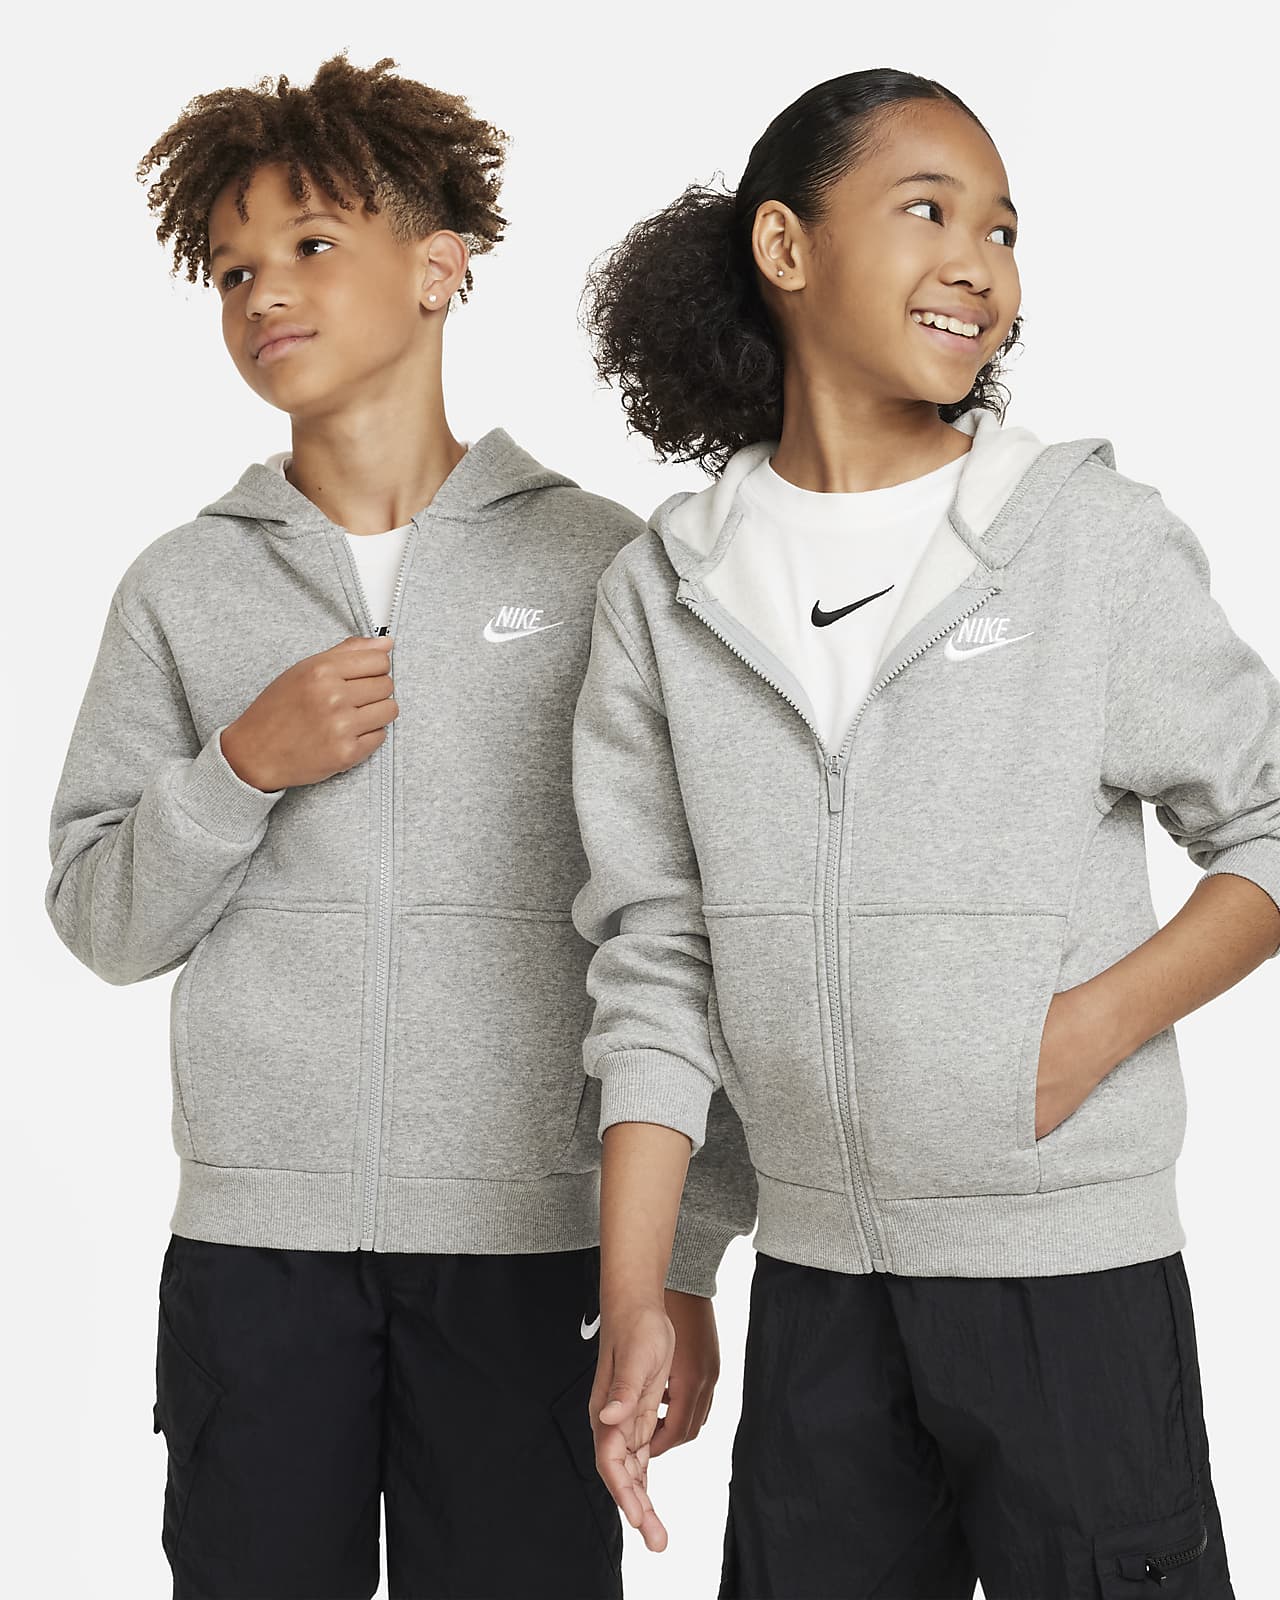 Μπλούζα με κουκούλα και φερμουάρ σε όλο το μήκος Nike Sportswear Club Fleece για μεγάλα παιδιά